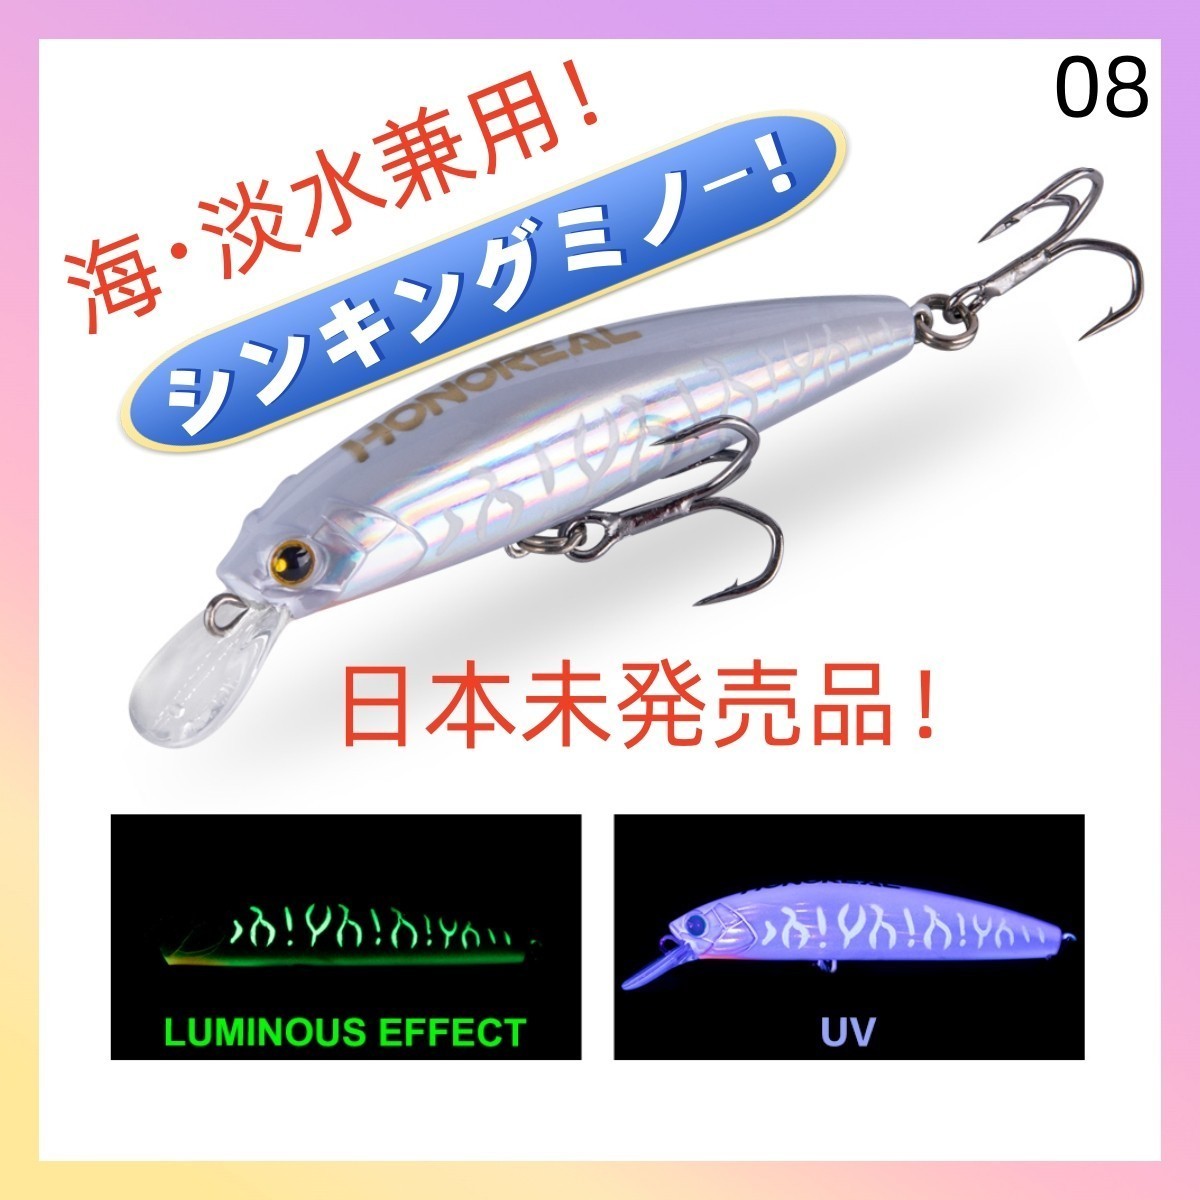 シンキングミノー 85mm 28g【海・淡水兼用】ルアー 釣り08